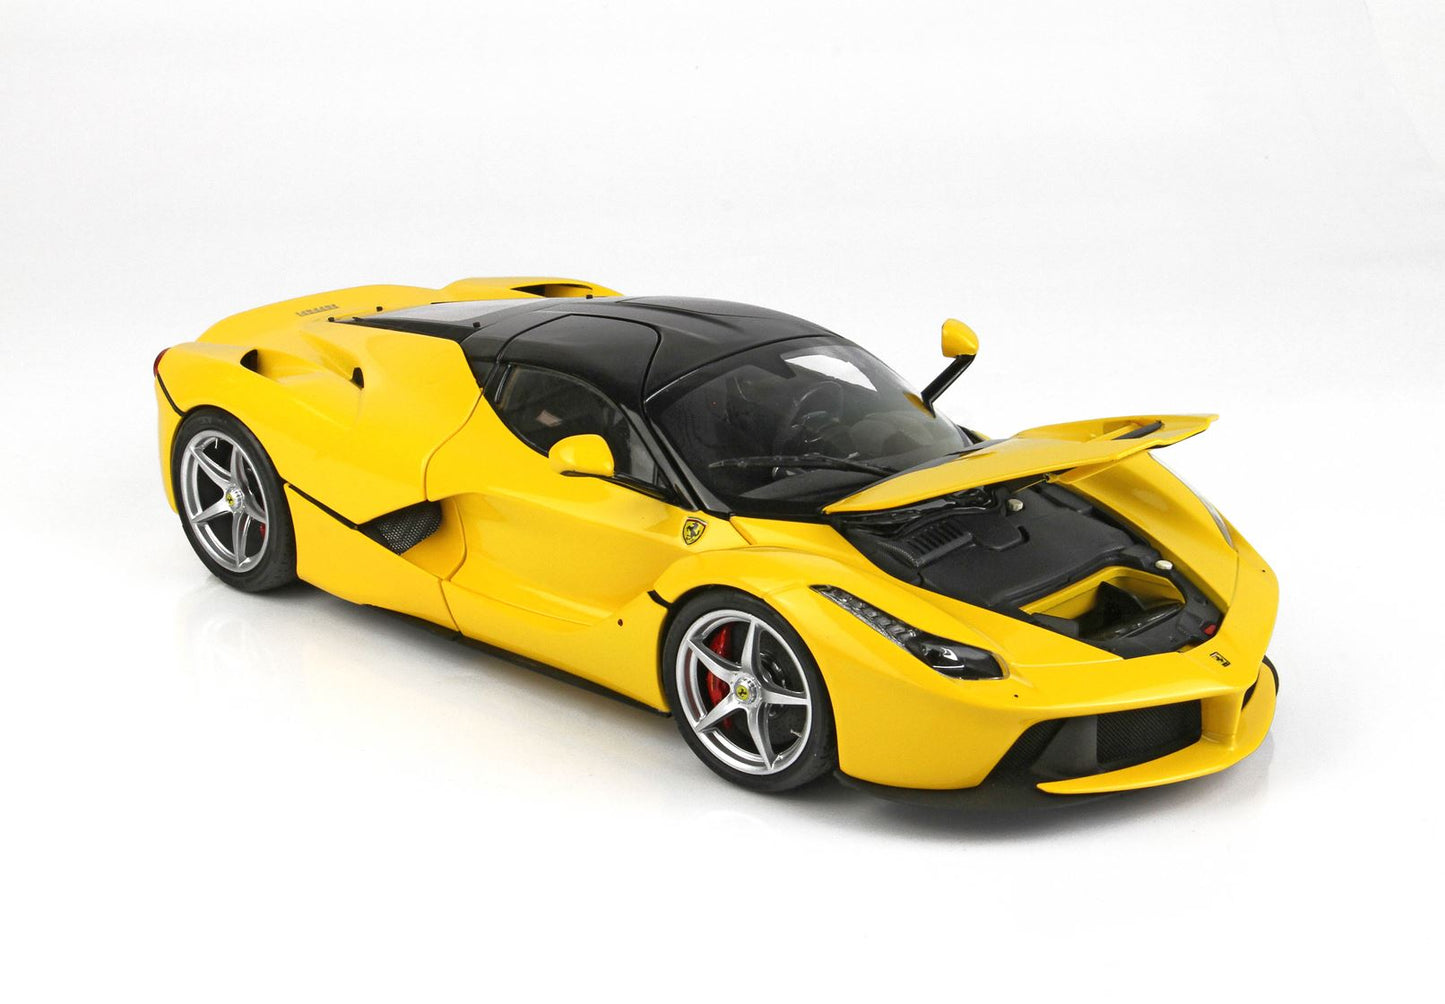 BBR 1/18 Ferrari LaFerrari DIE CAST Yellow Modena-120pcs limited